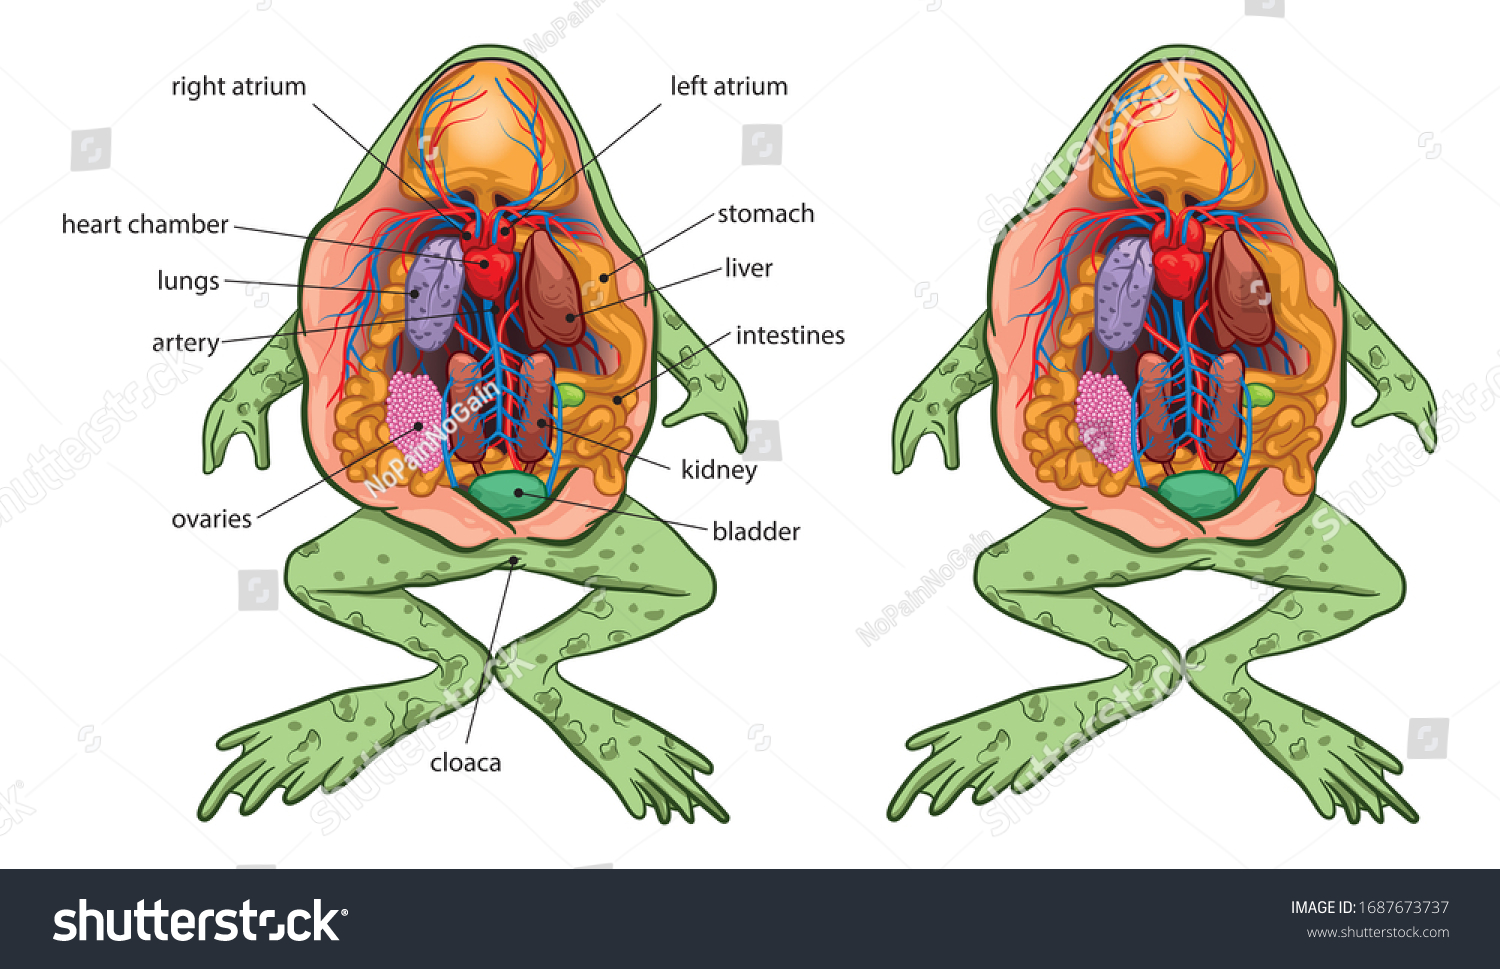 カエルの基本解剖図 のイラスト素材